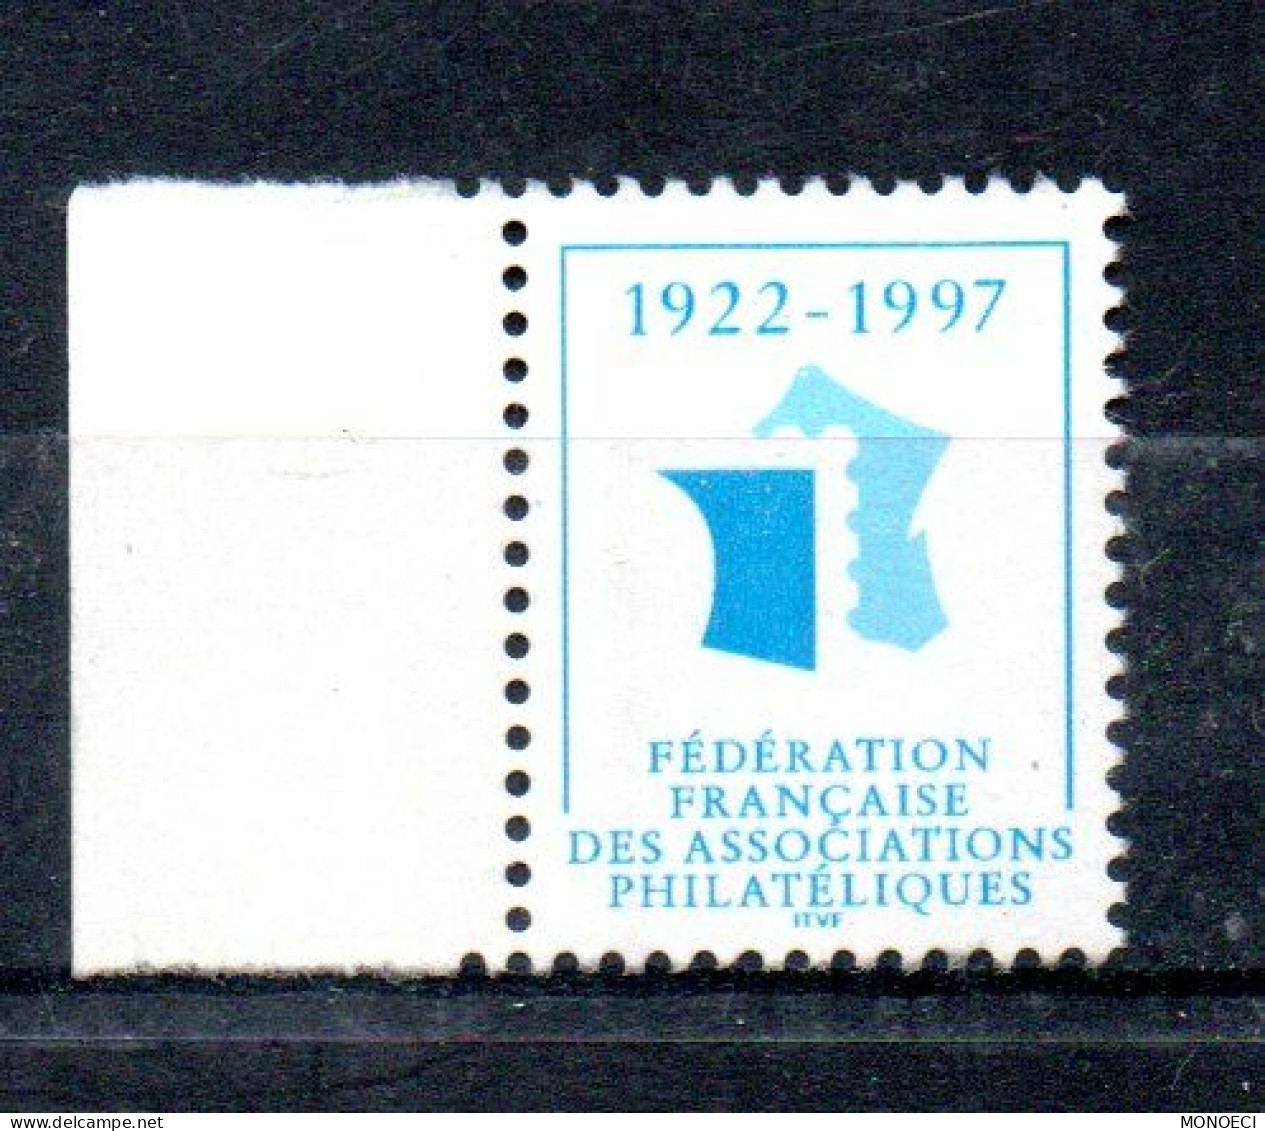 FRANCE -- ERRINOPHILIE -- Vignette, Cinderella -- Fédération Française Des Associations Philatéliques 1922 - 1997 - Philatelic Fairs